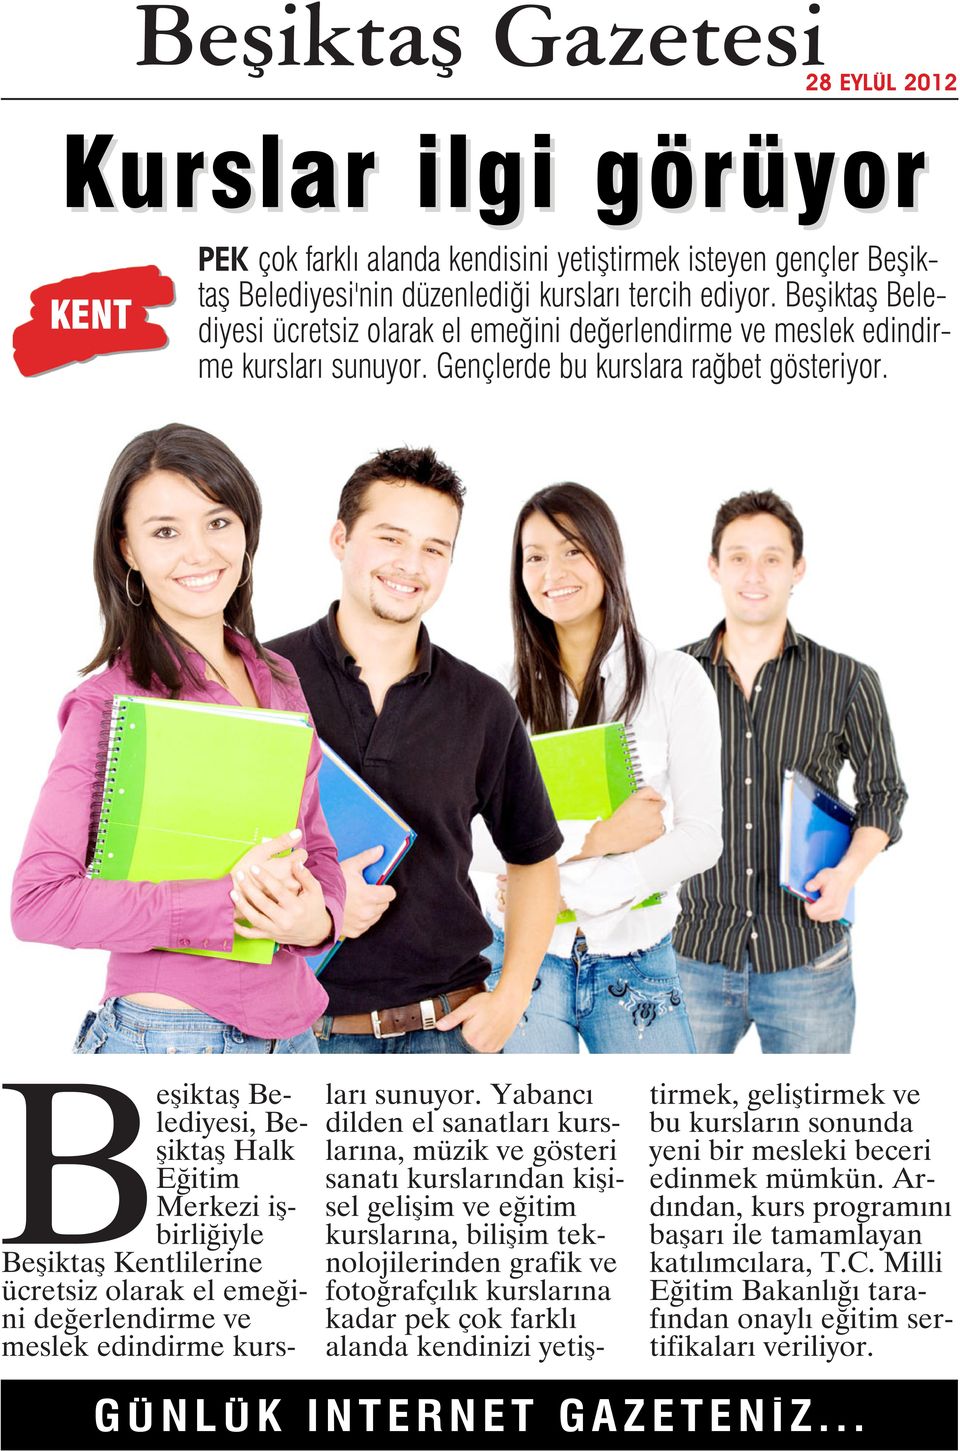 Beşiktaş Belediyesi, Beşiktaş Halk Eğitim Merkezi işbirliğiyle Beşiktaş Kentlilerine ücretsiz olarak el emeğini değerlendirme ve meslek edindirme kursları sunuyor.